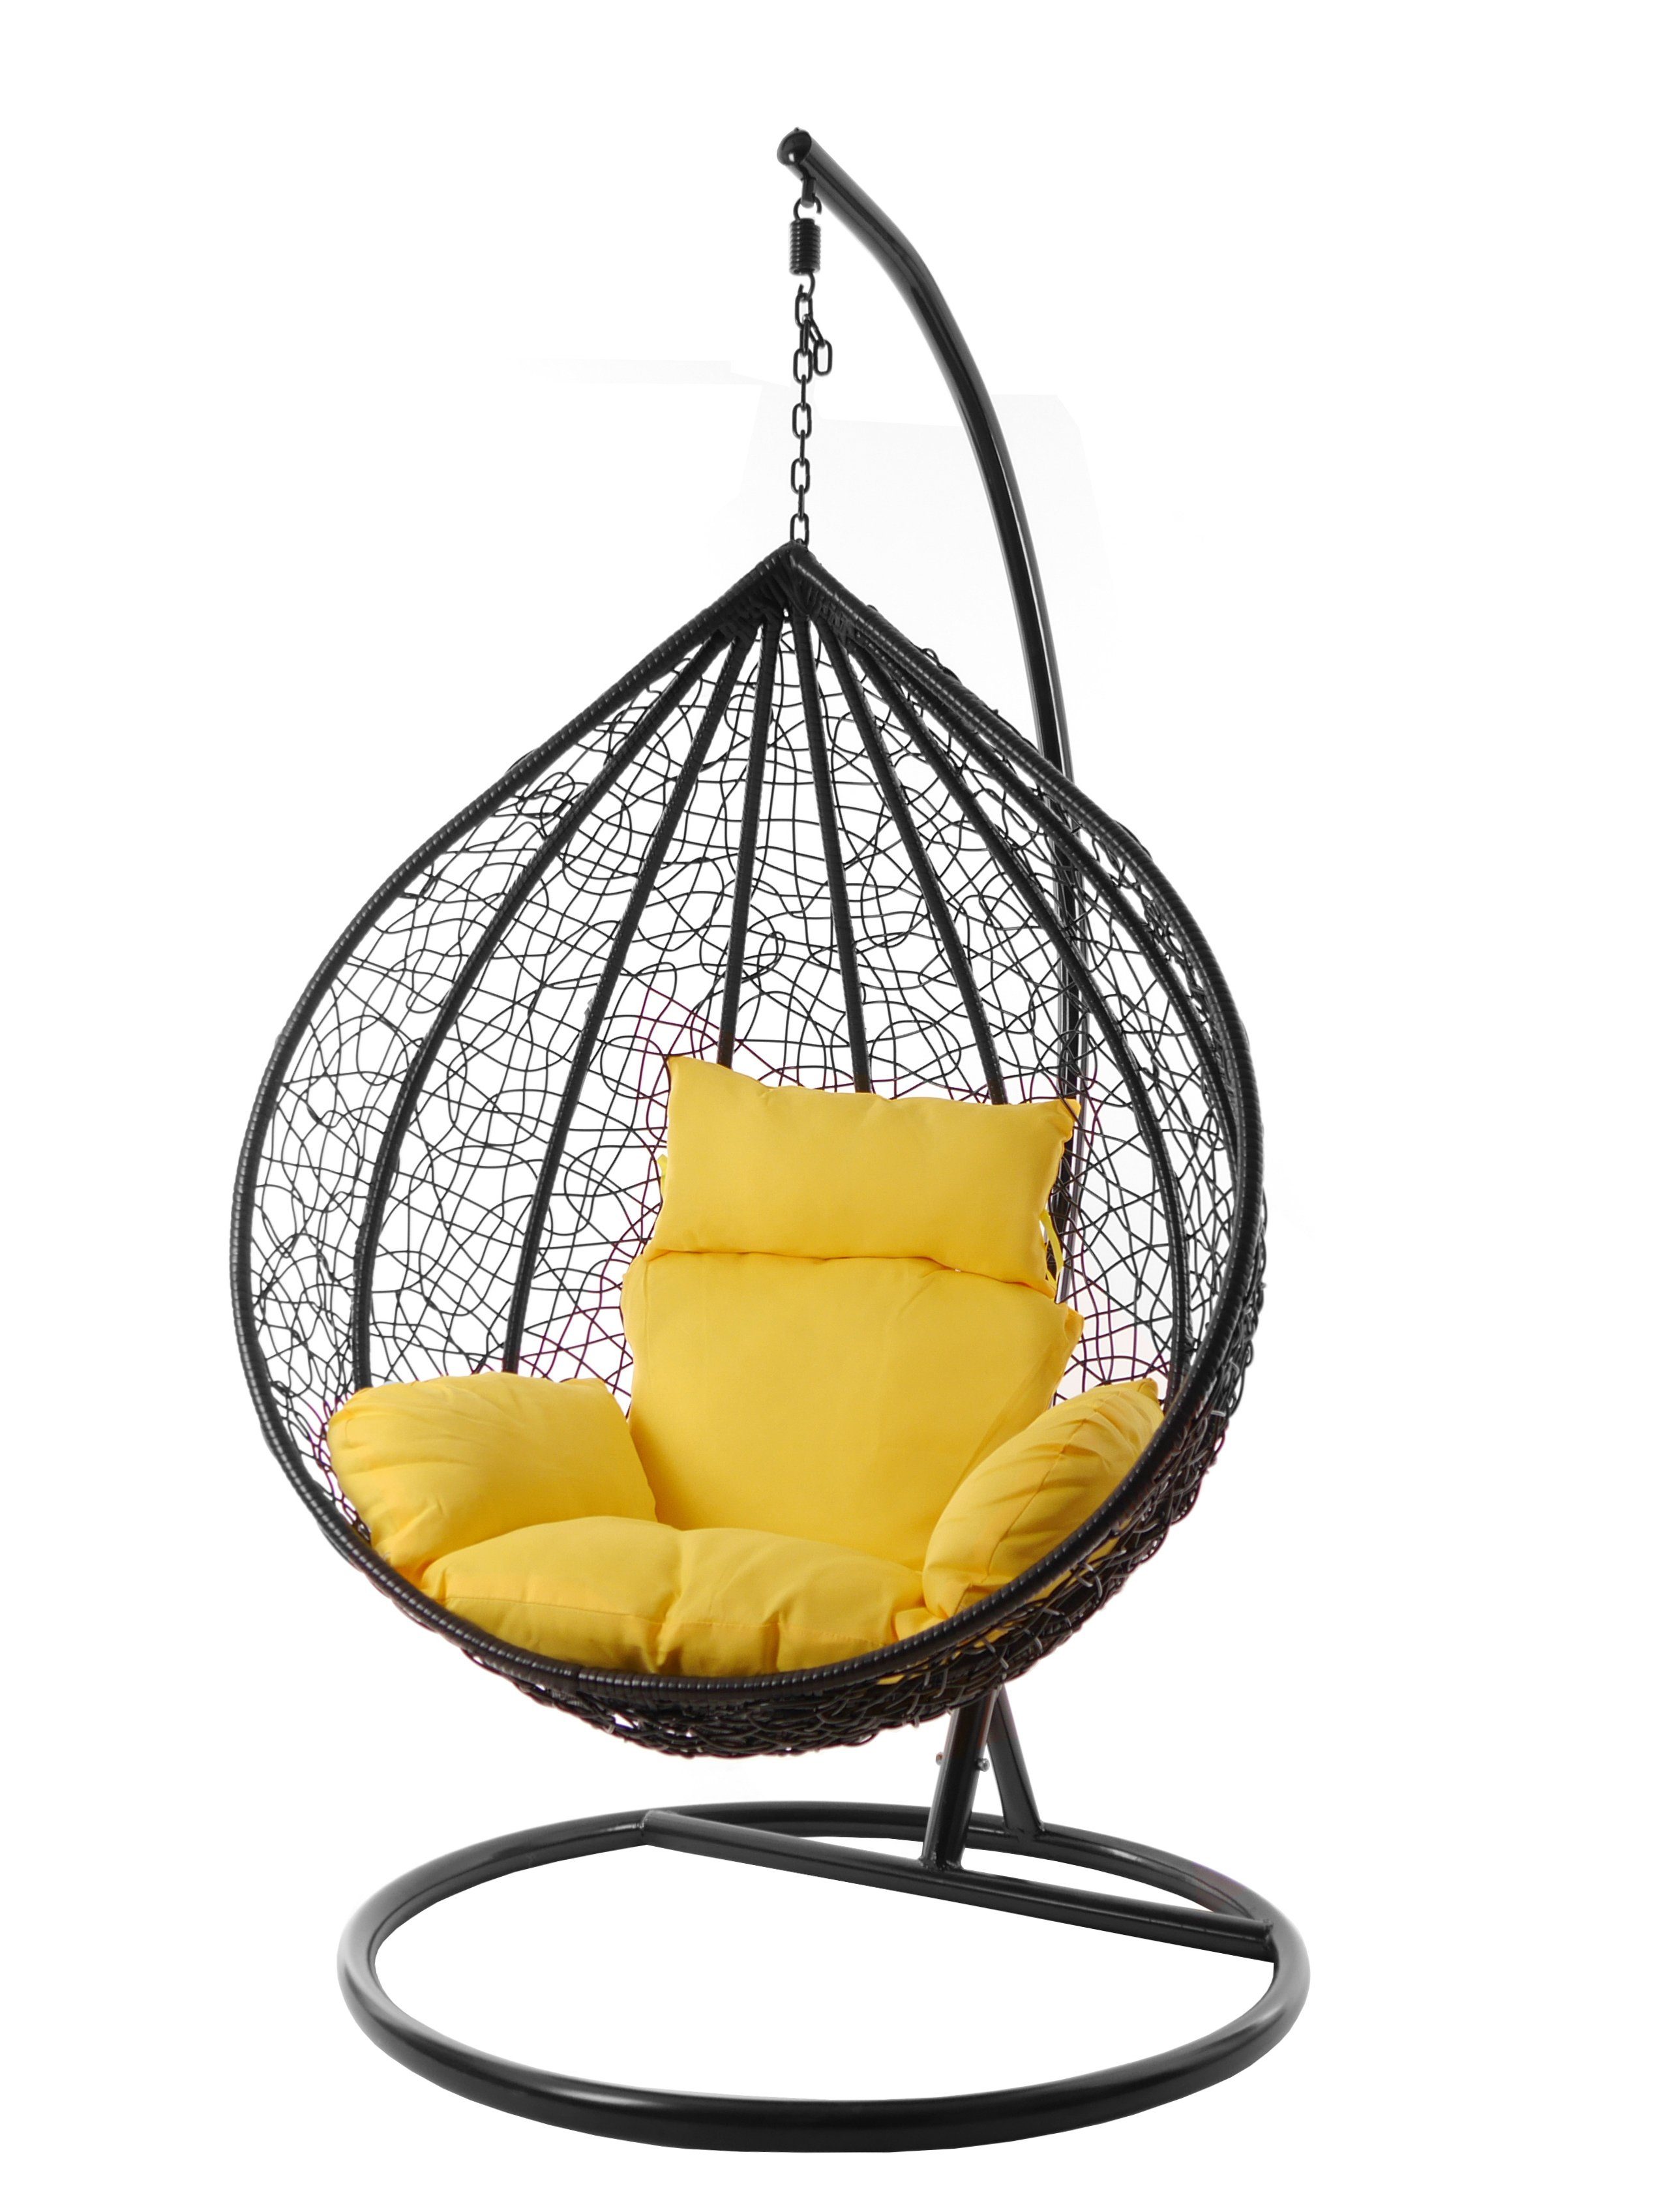 KIDEO Hängesessel Hängesessel MANACOR schwarz, XXL Swing Chair, edel, Gestell und Kissen inklusive, Nest-Kissen, verschiedene Farben gelb (2200 pineapple)